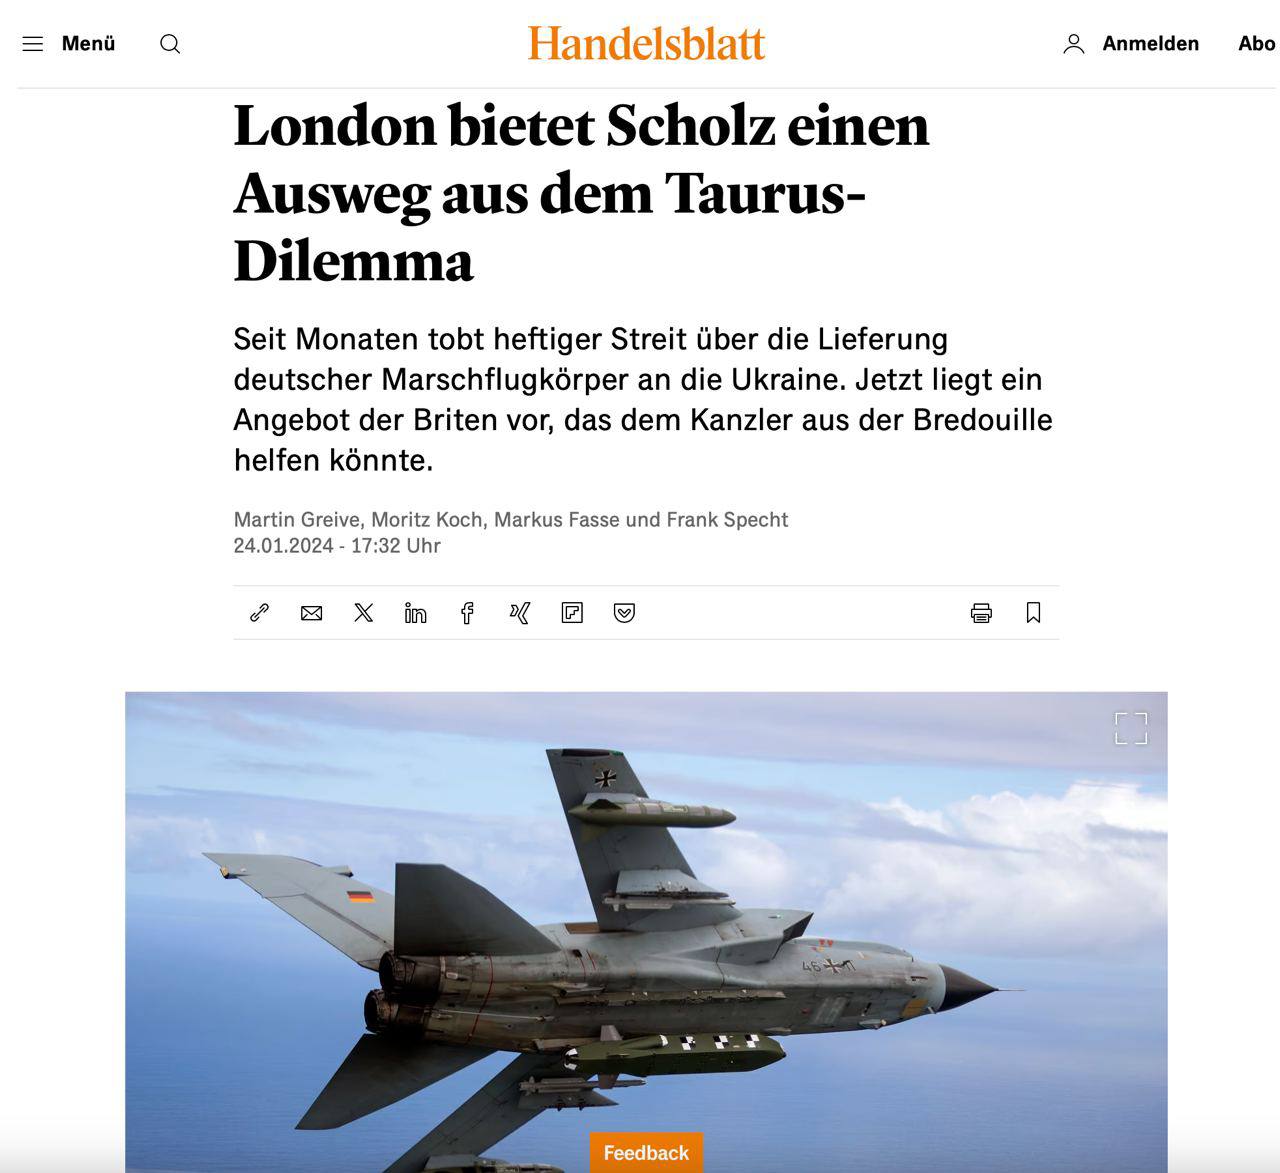 Снимок заголовка в Handelsblatt